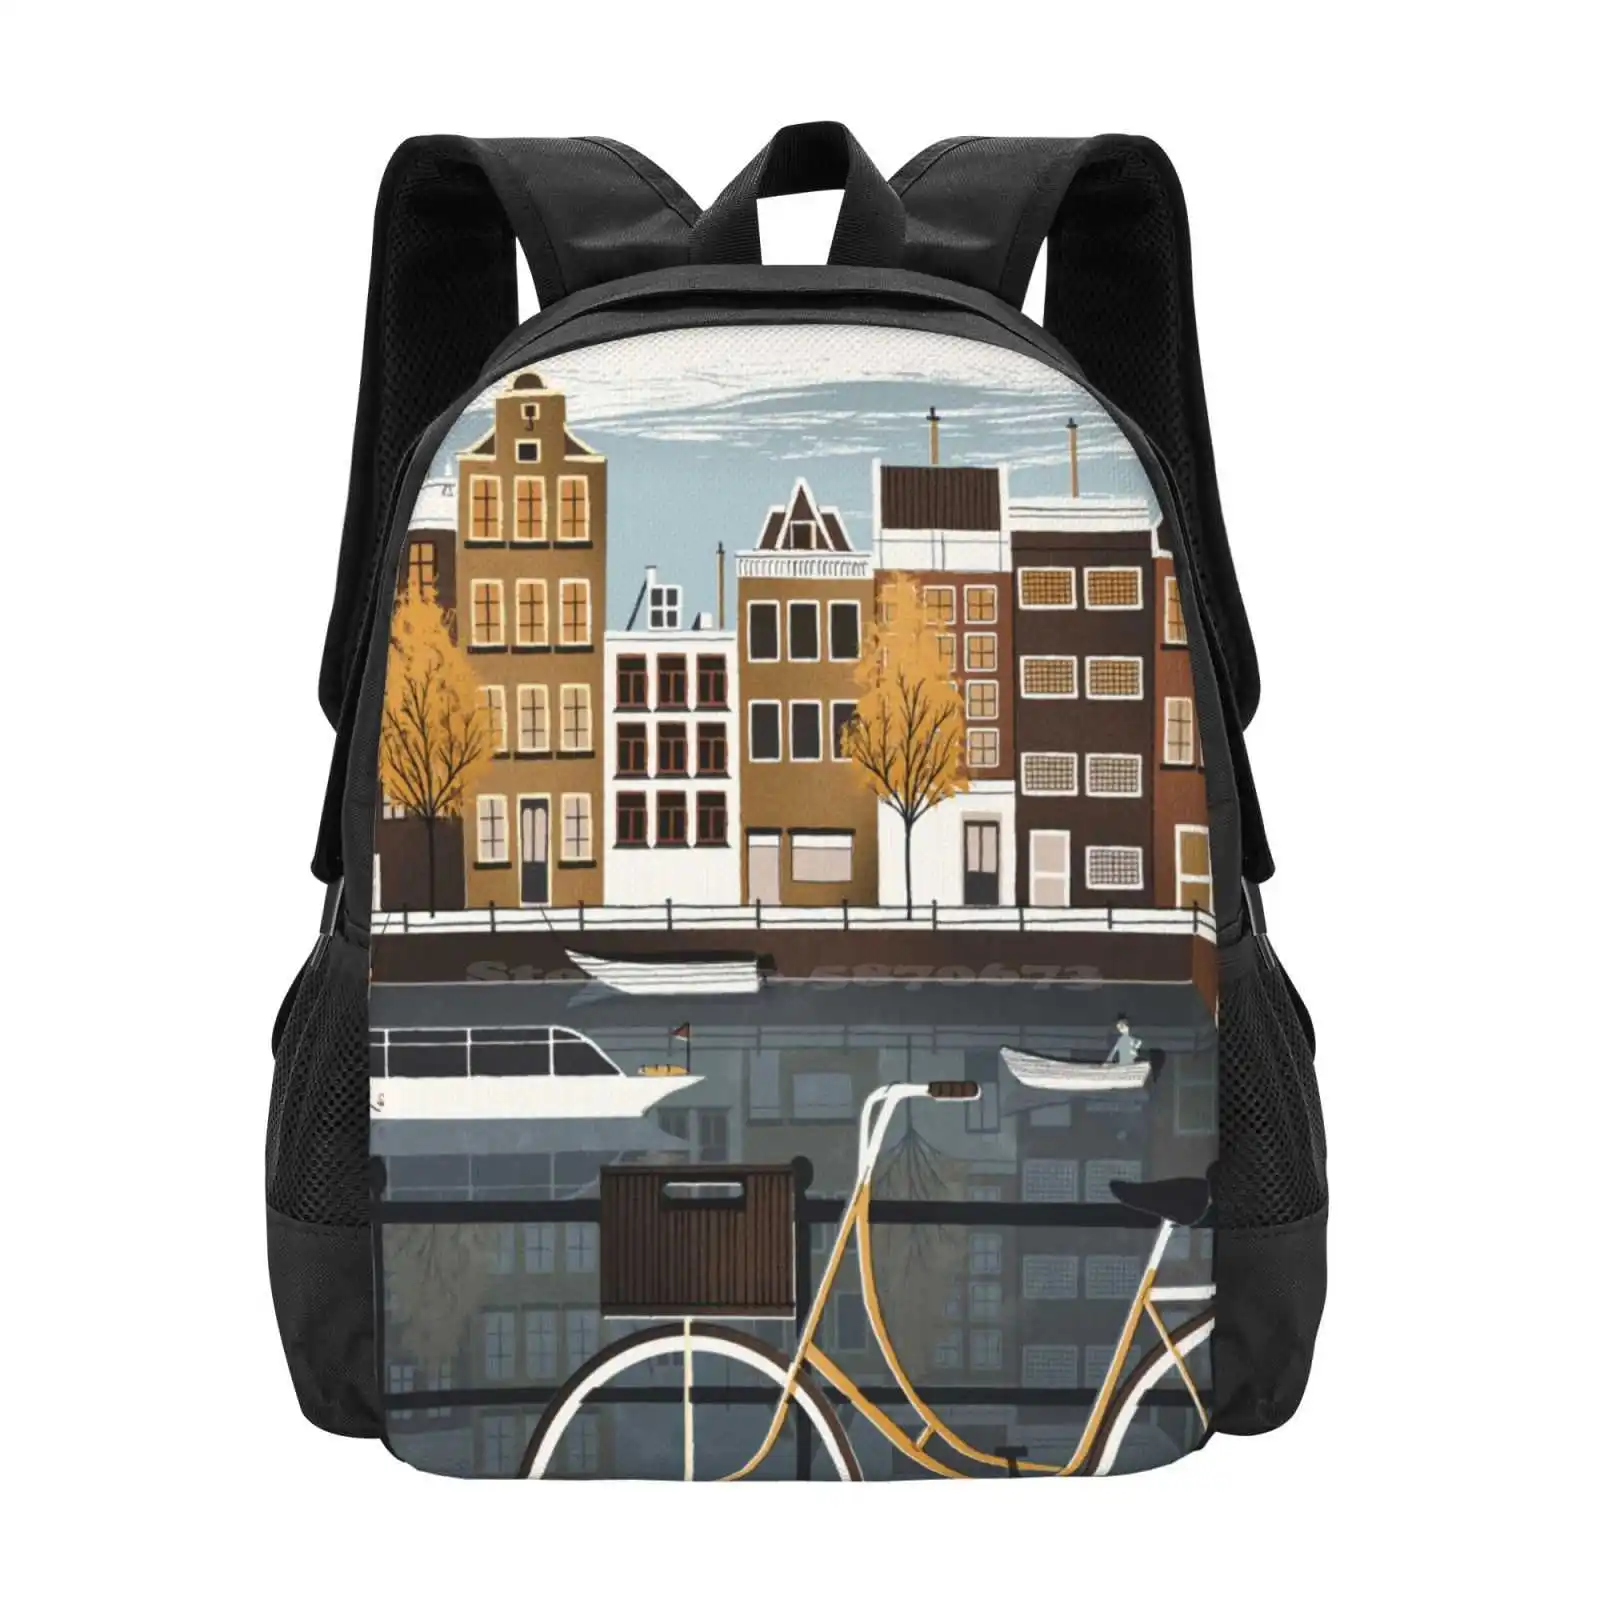 

Амстердам Лидер продаж рюкзак модные сумки Амстердам канал лодка баржа велосипед городской пейзаж Голландия Велоспорт город